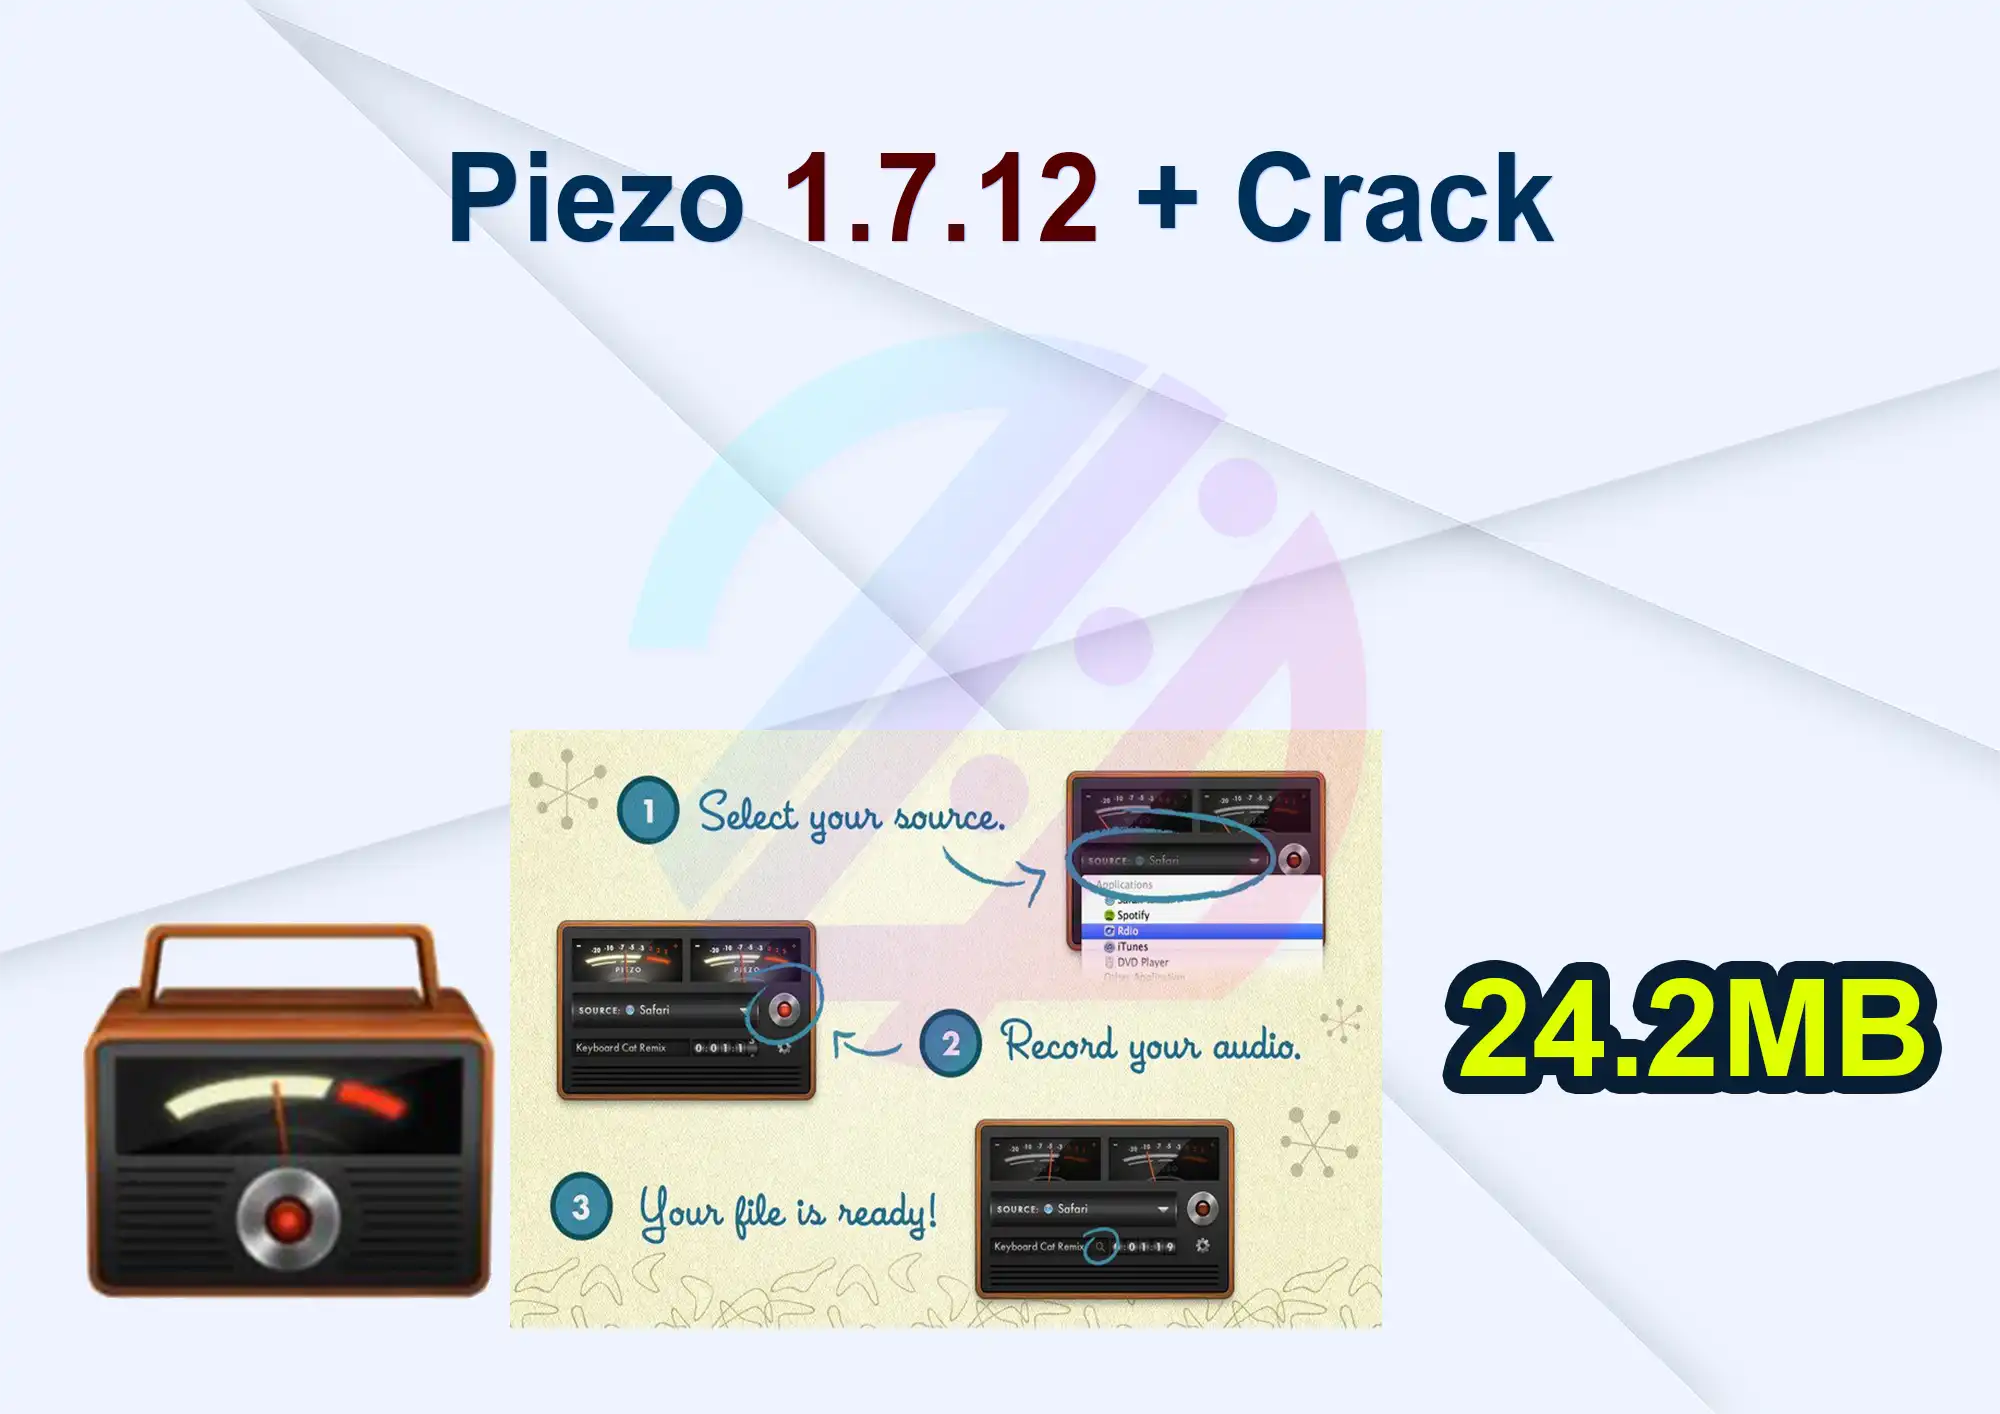 Piezo 1.7.12 + Crack